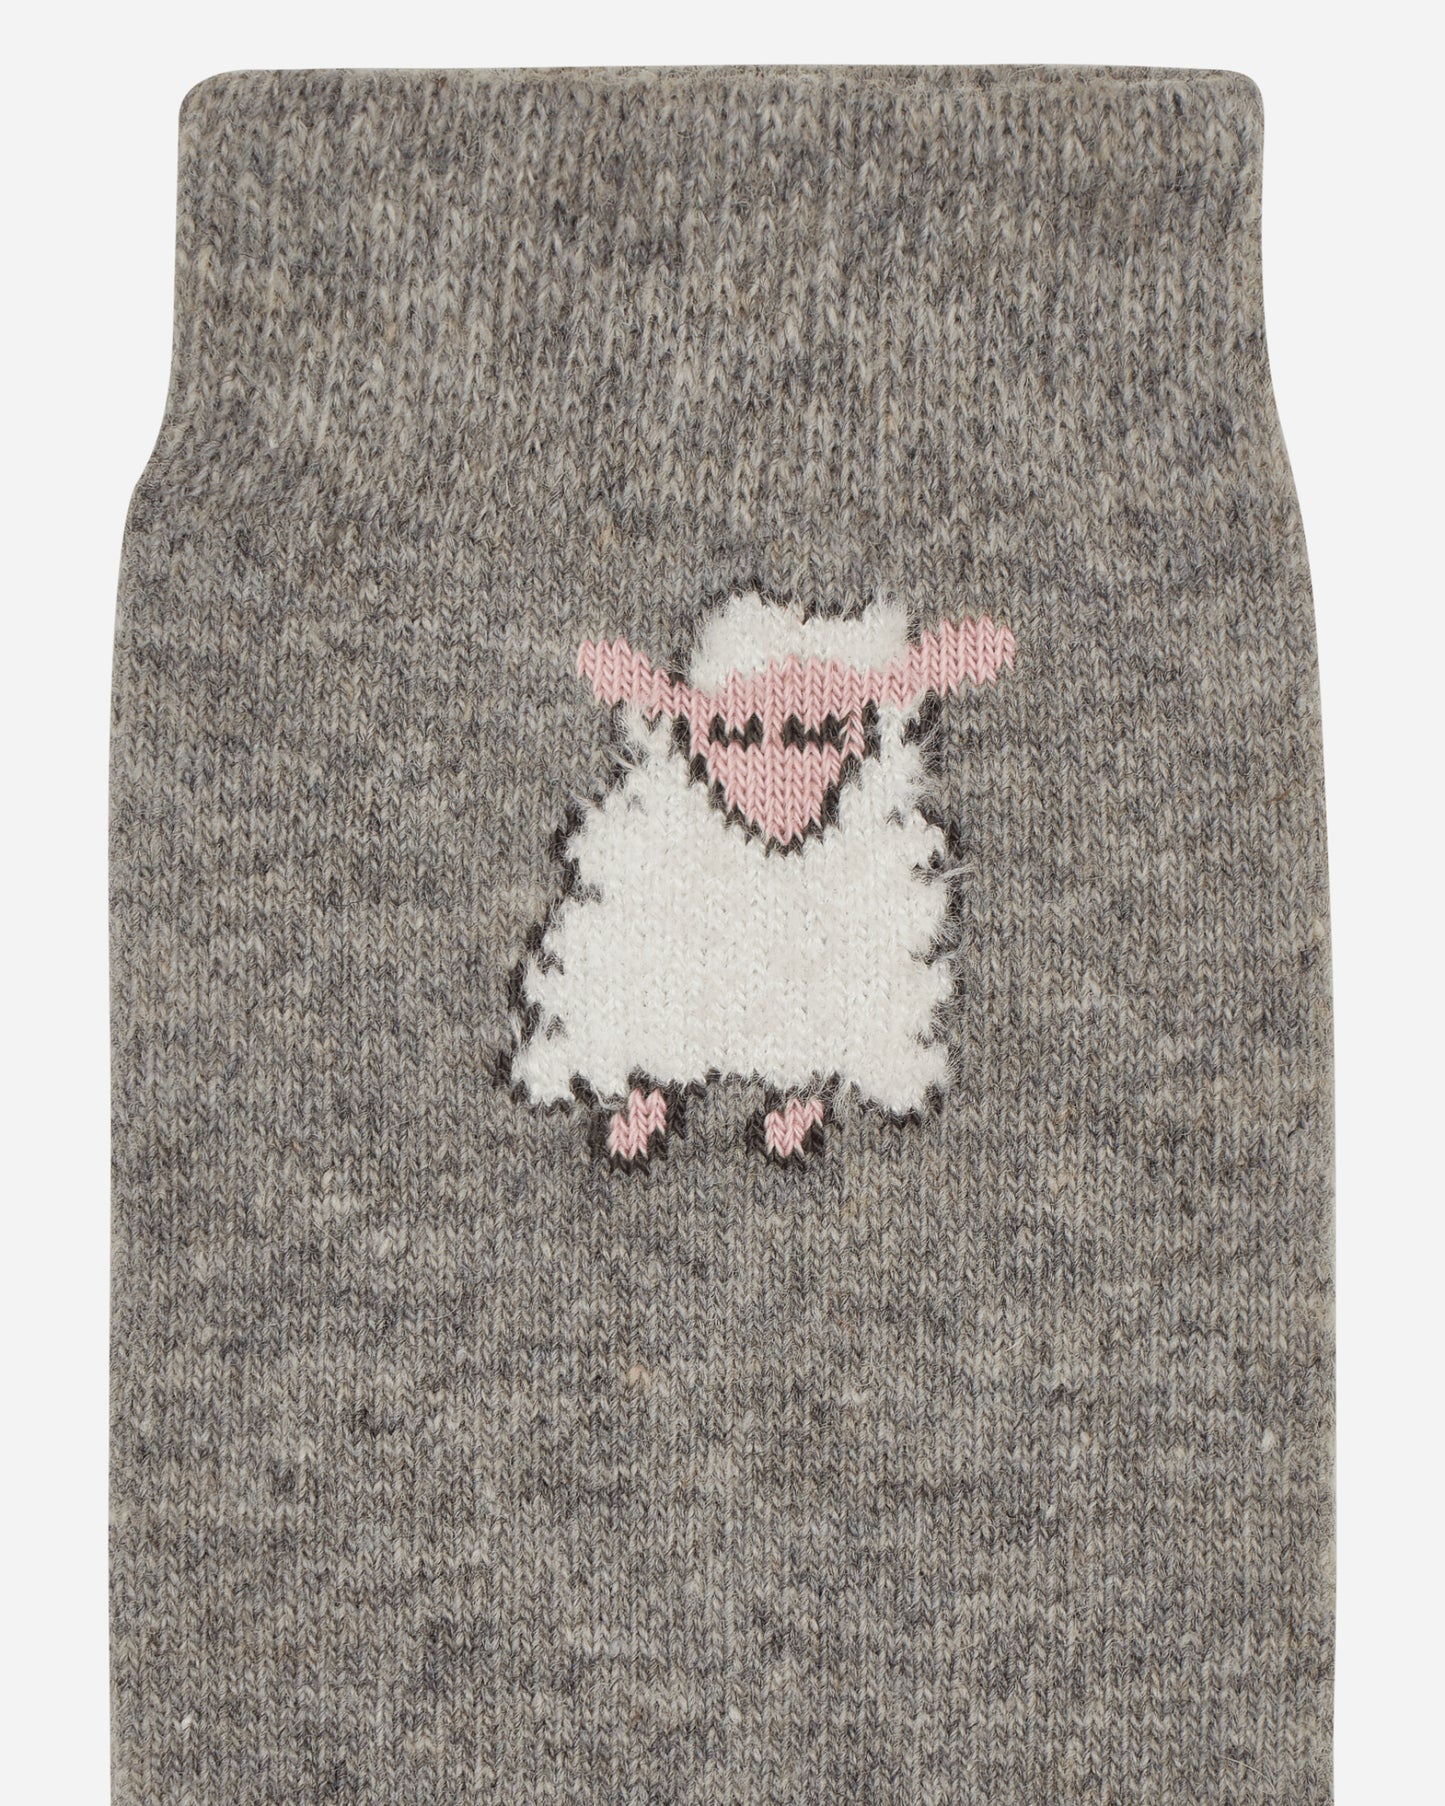 Sky High Farm Sheep Embroidered Socks Knit Grey Underwear Socks SHF04K003  1